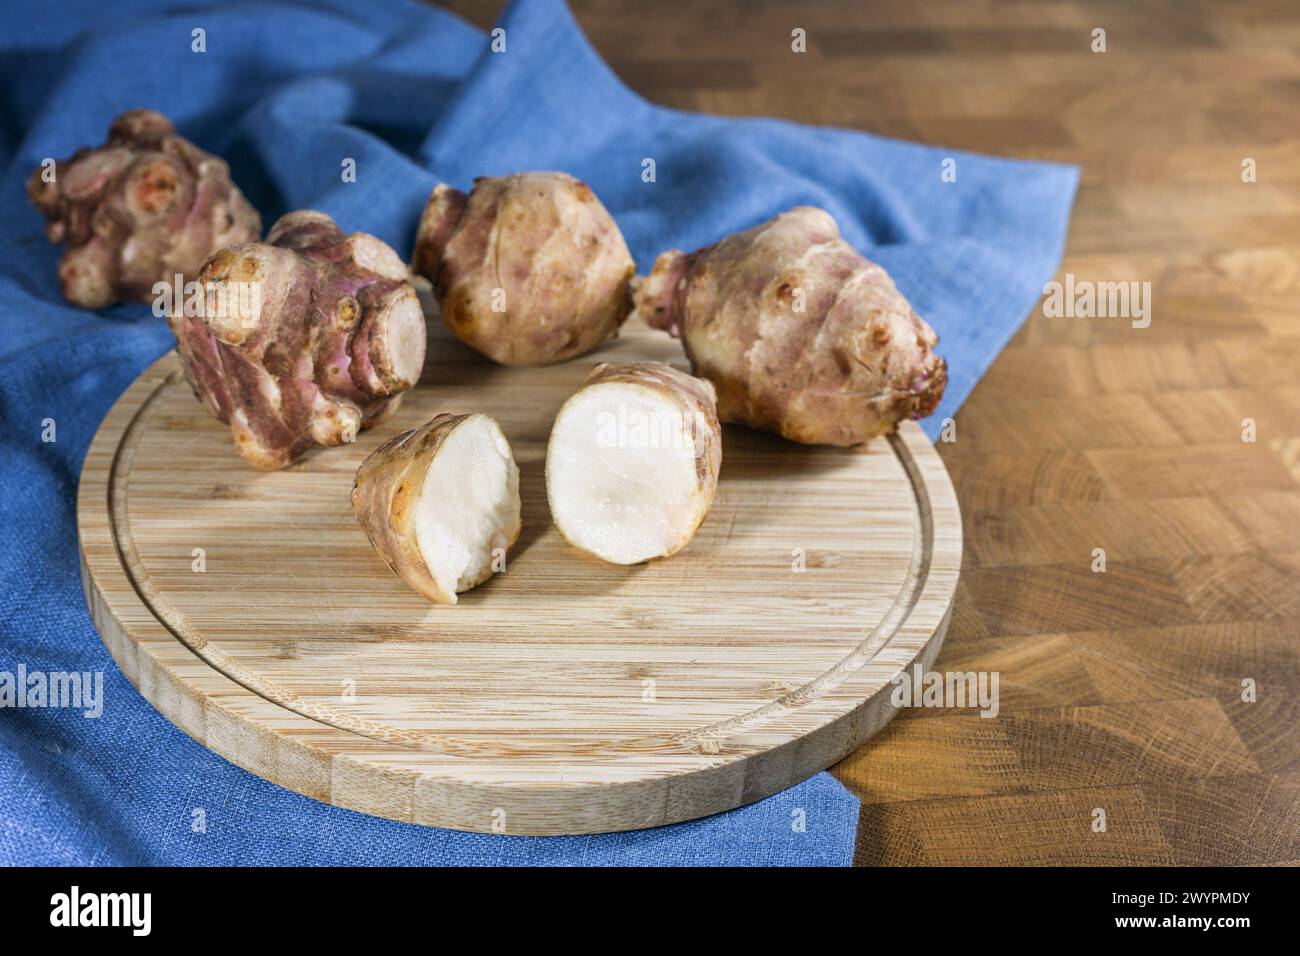 Légume racine d'artichaut de Jérusalem ou topinambur (Helianthus tuberosus), entier et coupé en deux sur une planche de cuisine en bois rustique et une serviette bleue, pour la guérison Banque D'Images